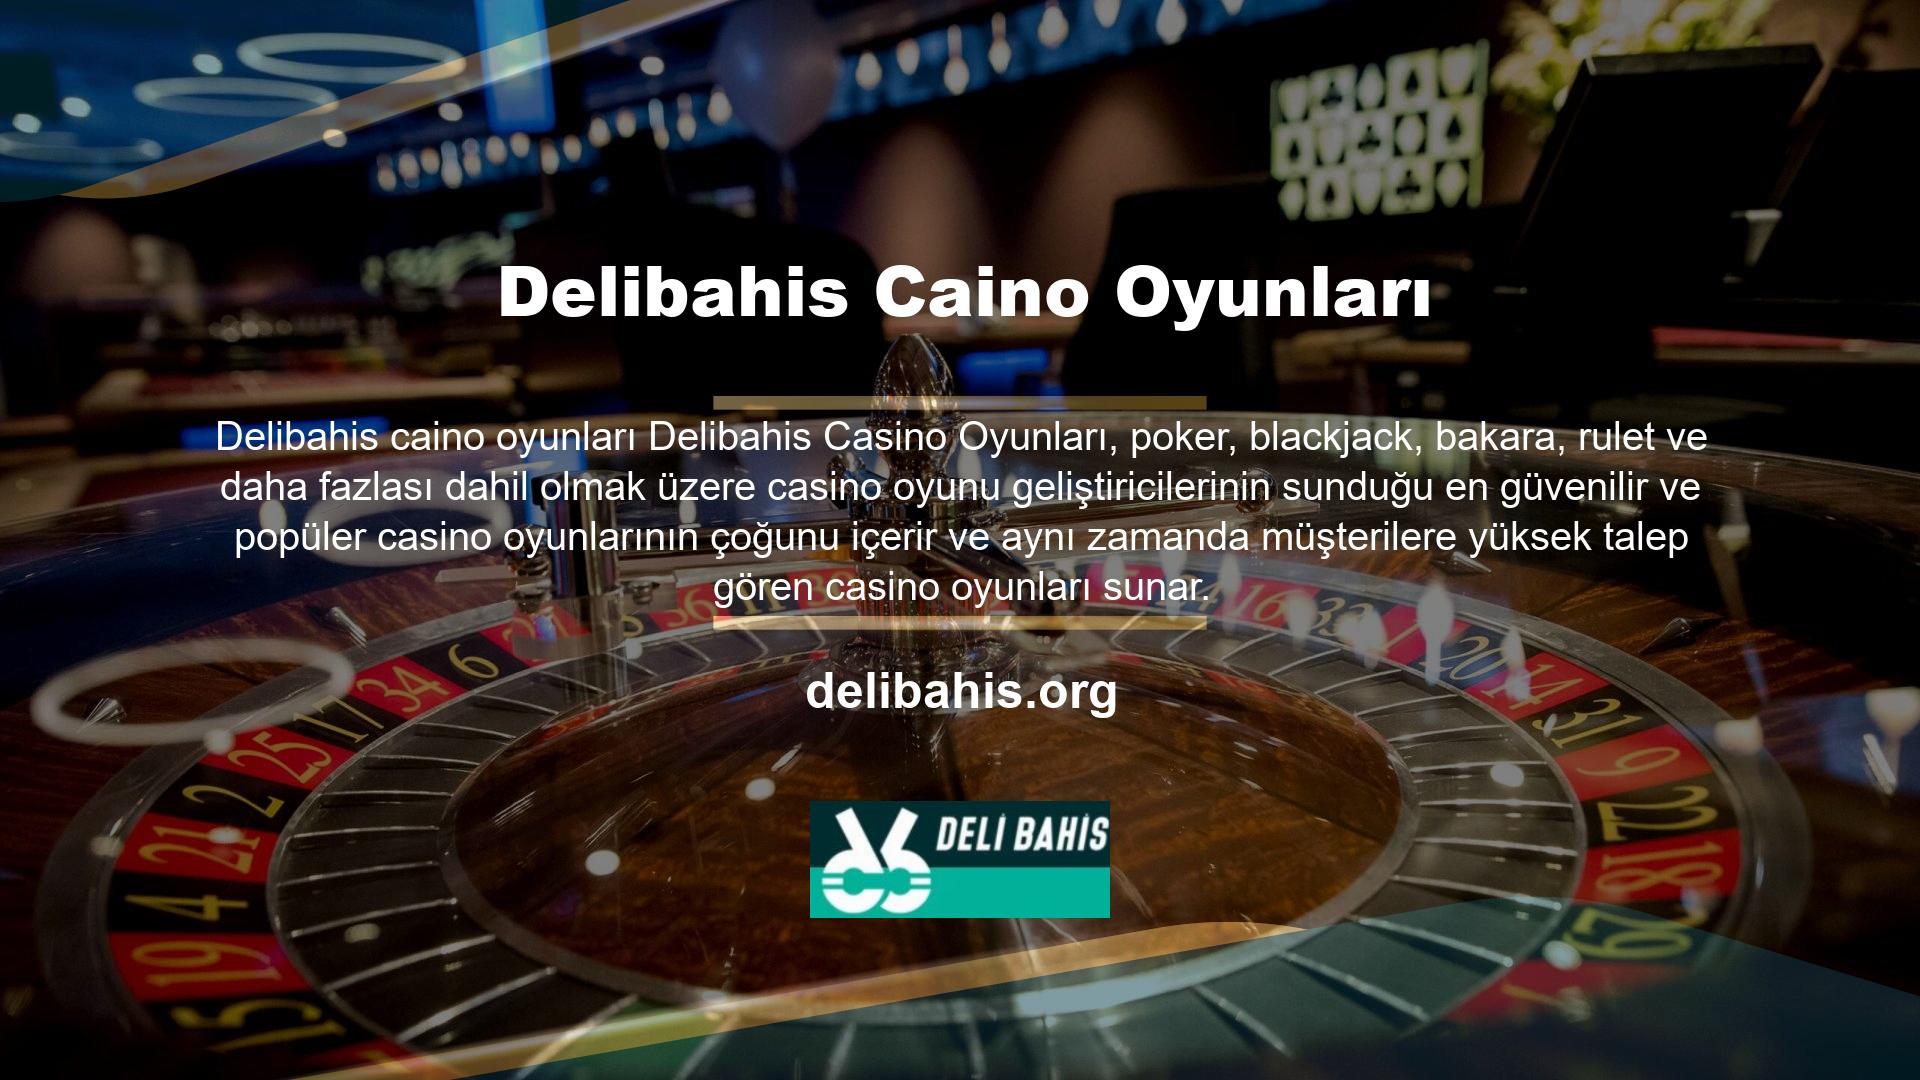 Delibahis Canlı Casino Lobisi Oyun lobisinde yer alan birçok masadan bahsetmiştik